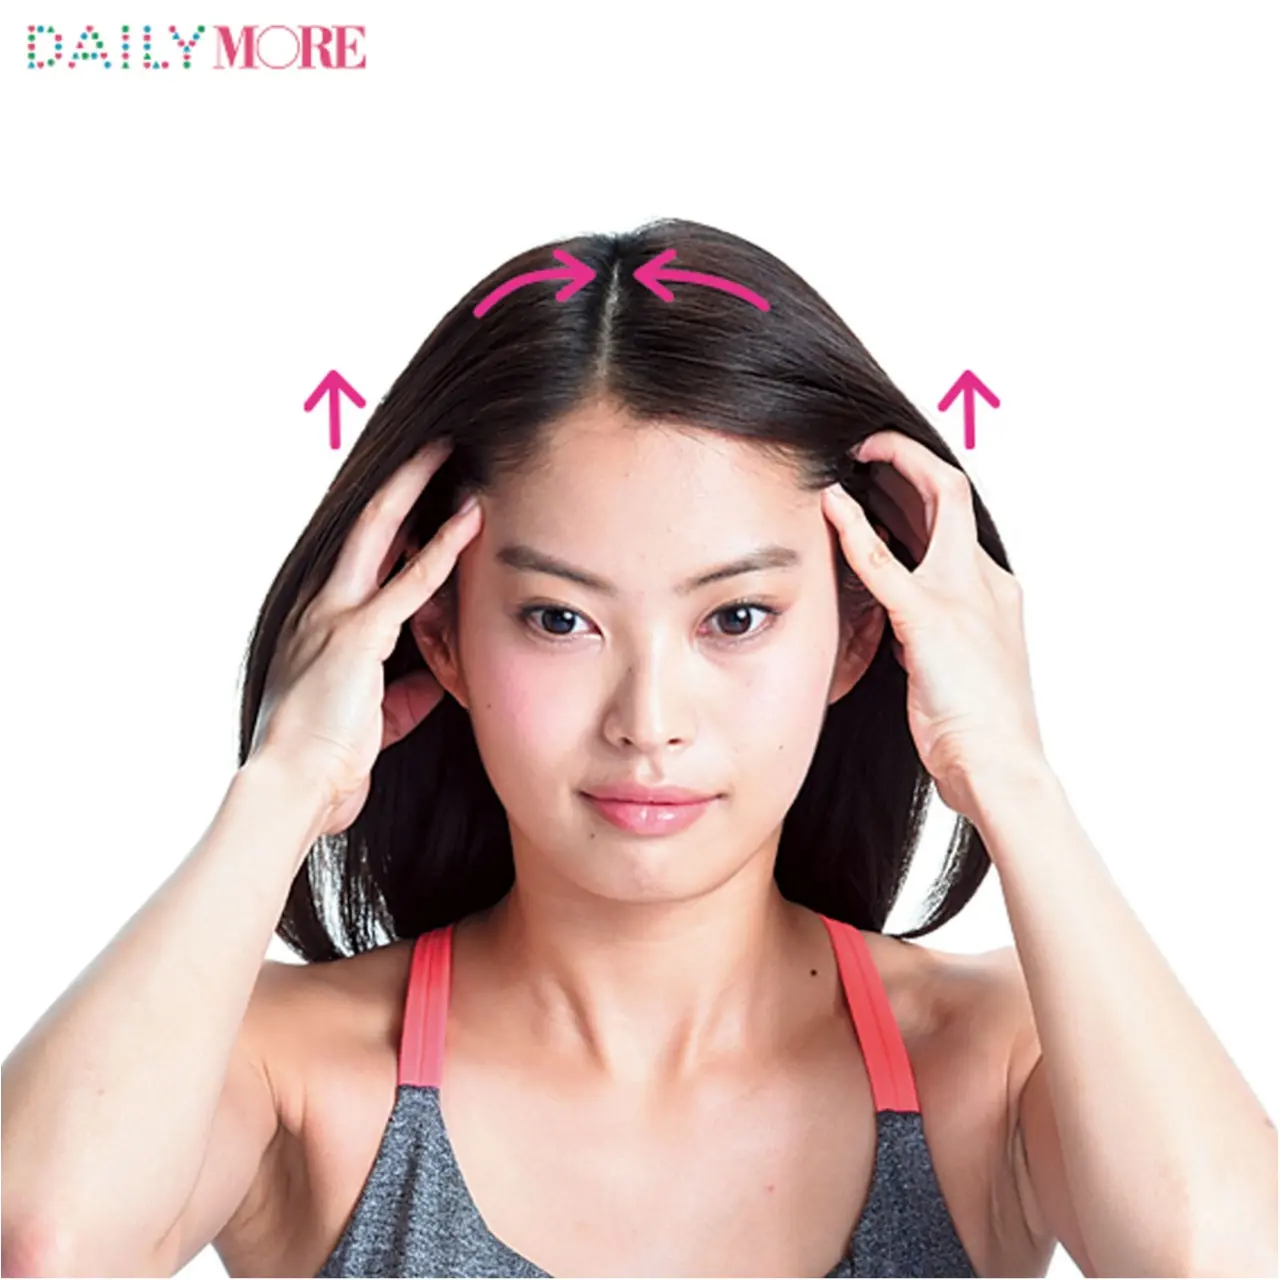 代女子の薄毛が増えている 薄毛予防の 頭皮マッサージ を今すぐはじめよう ビューティ コスメ メイク ヘア ダイエット Daily More